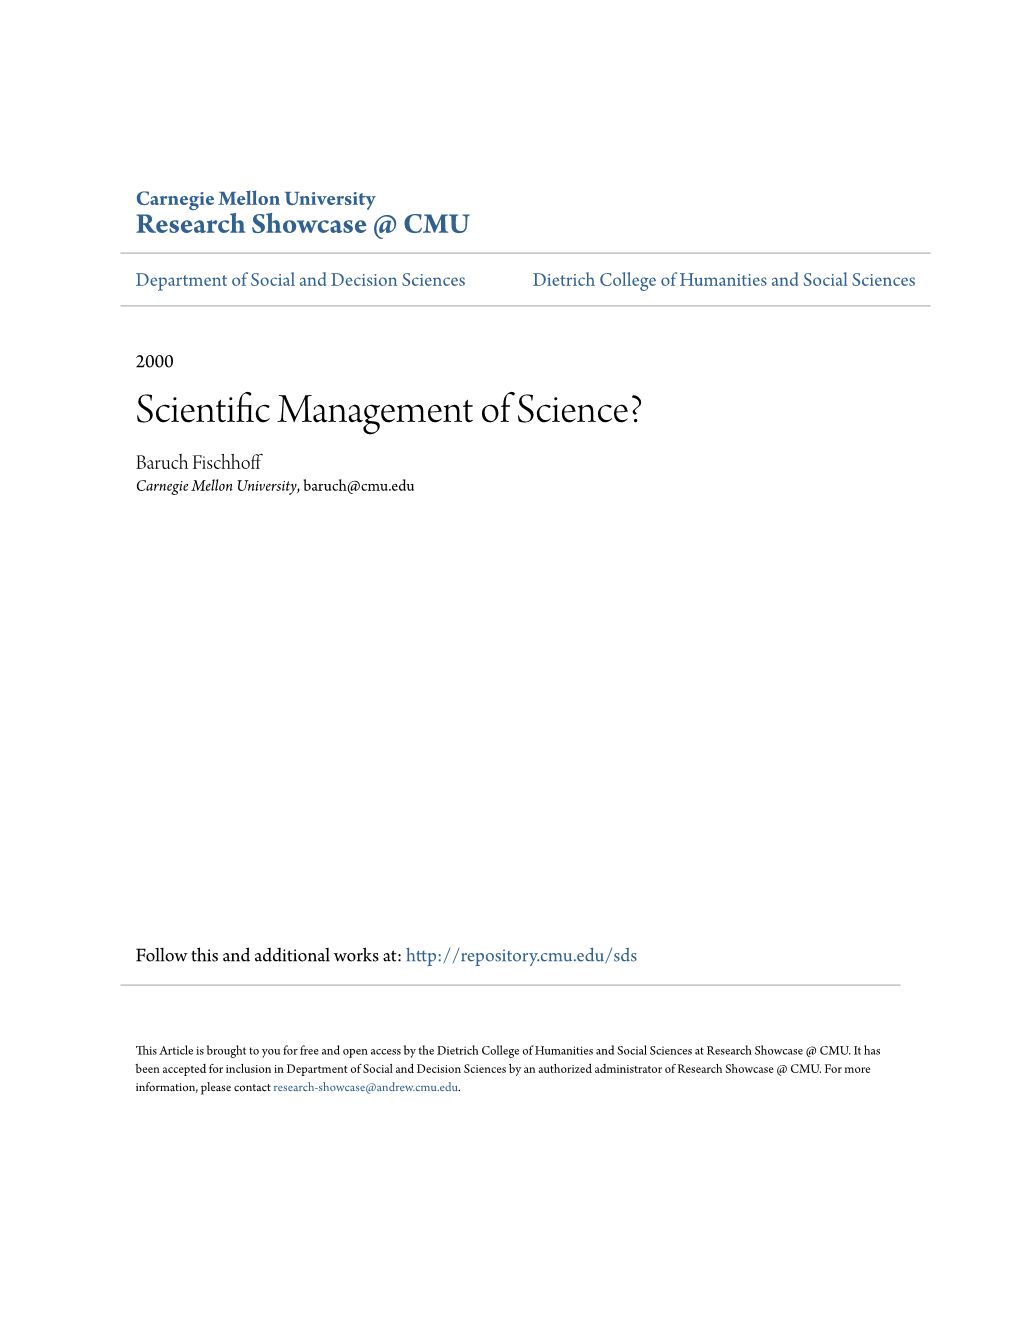 Scientific Management of Science?